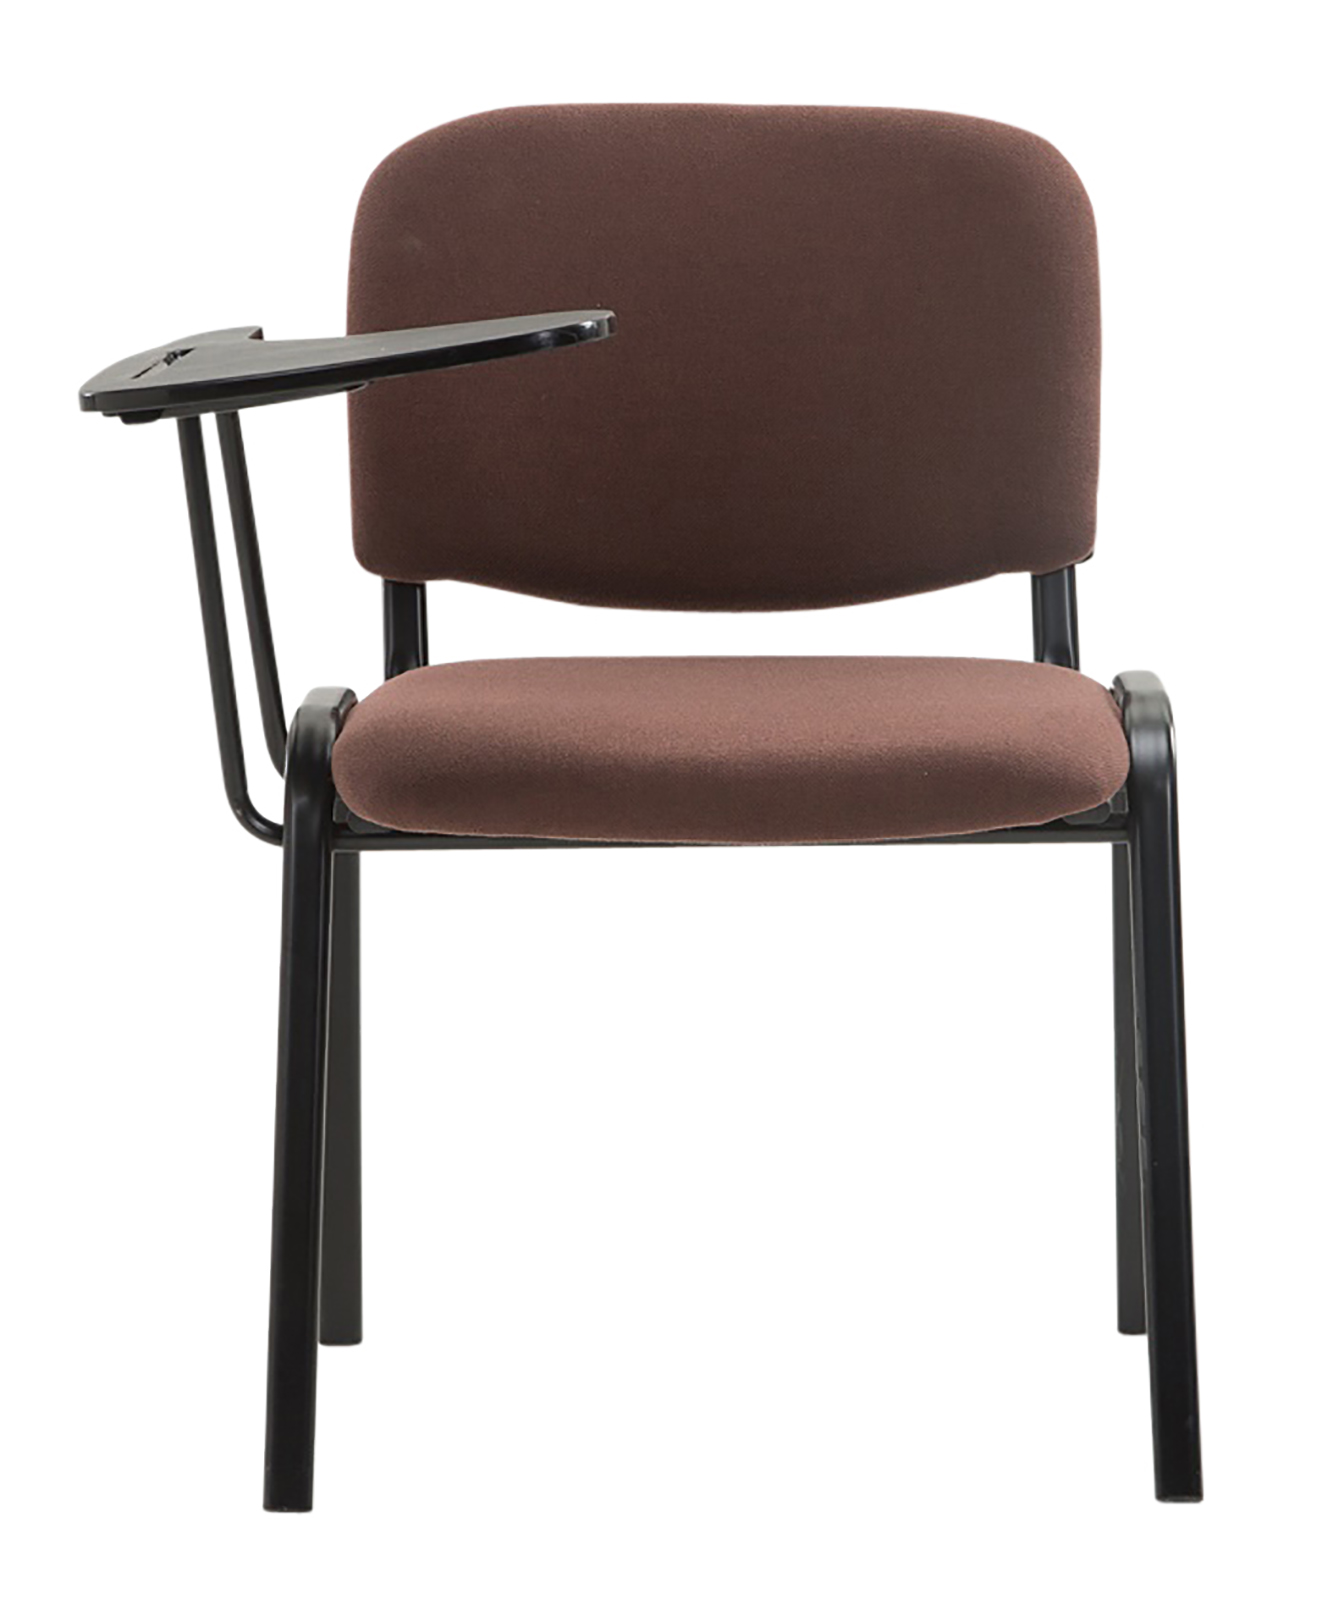 4er Set Stühle Ken mit Klapptisch Stoff braun